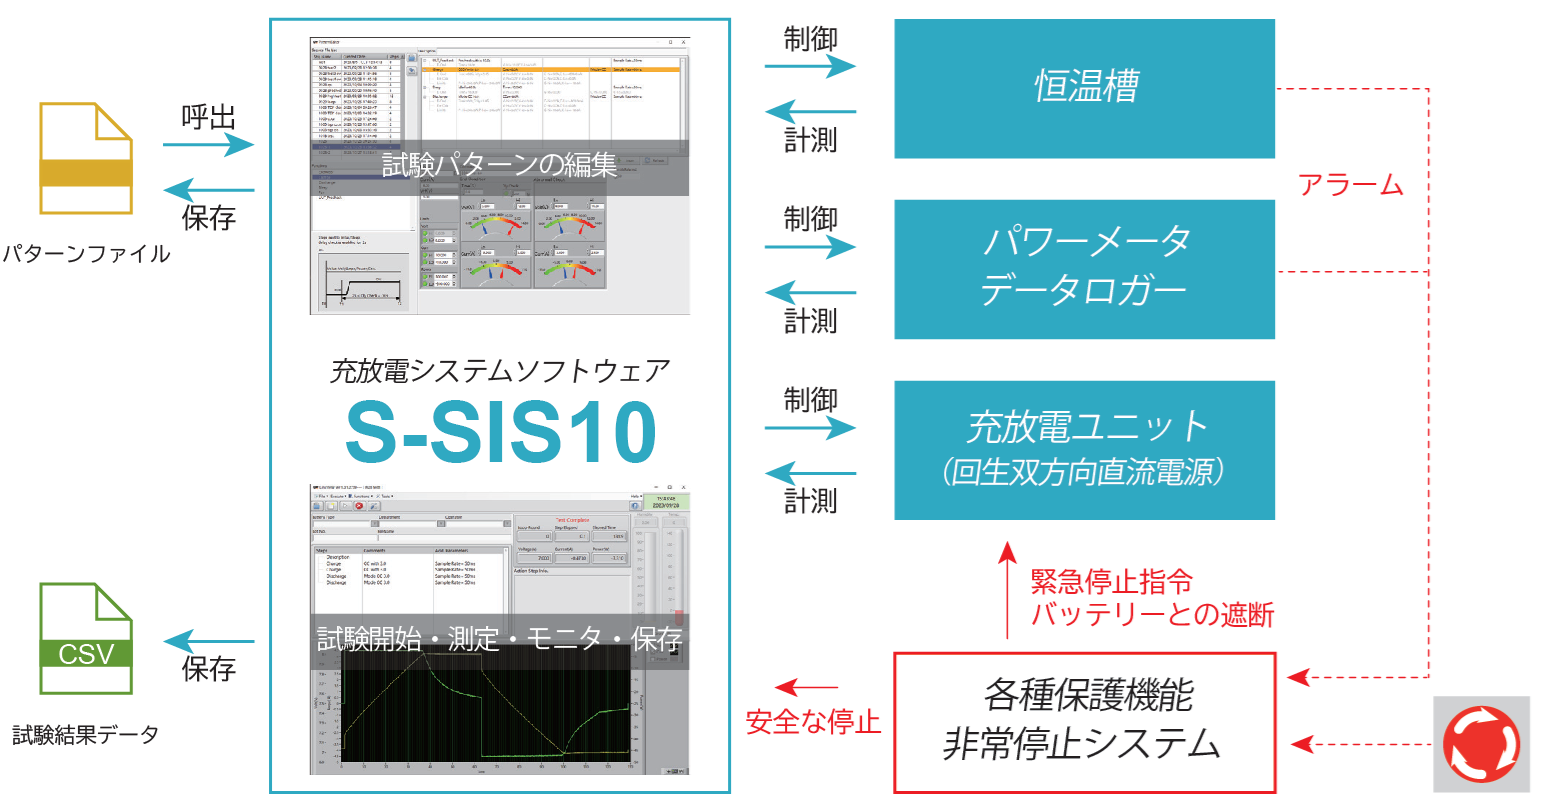 アプリケーションソフトウェア「S-SIS10」